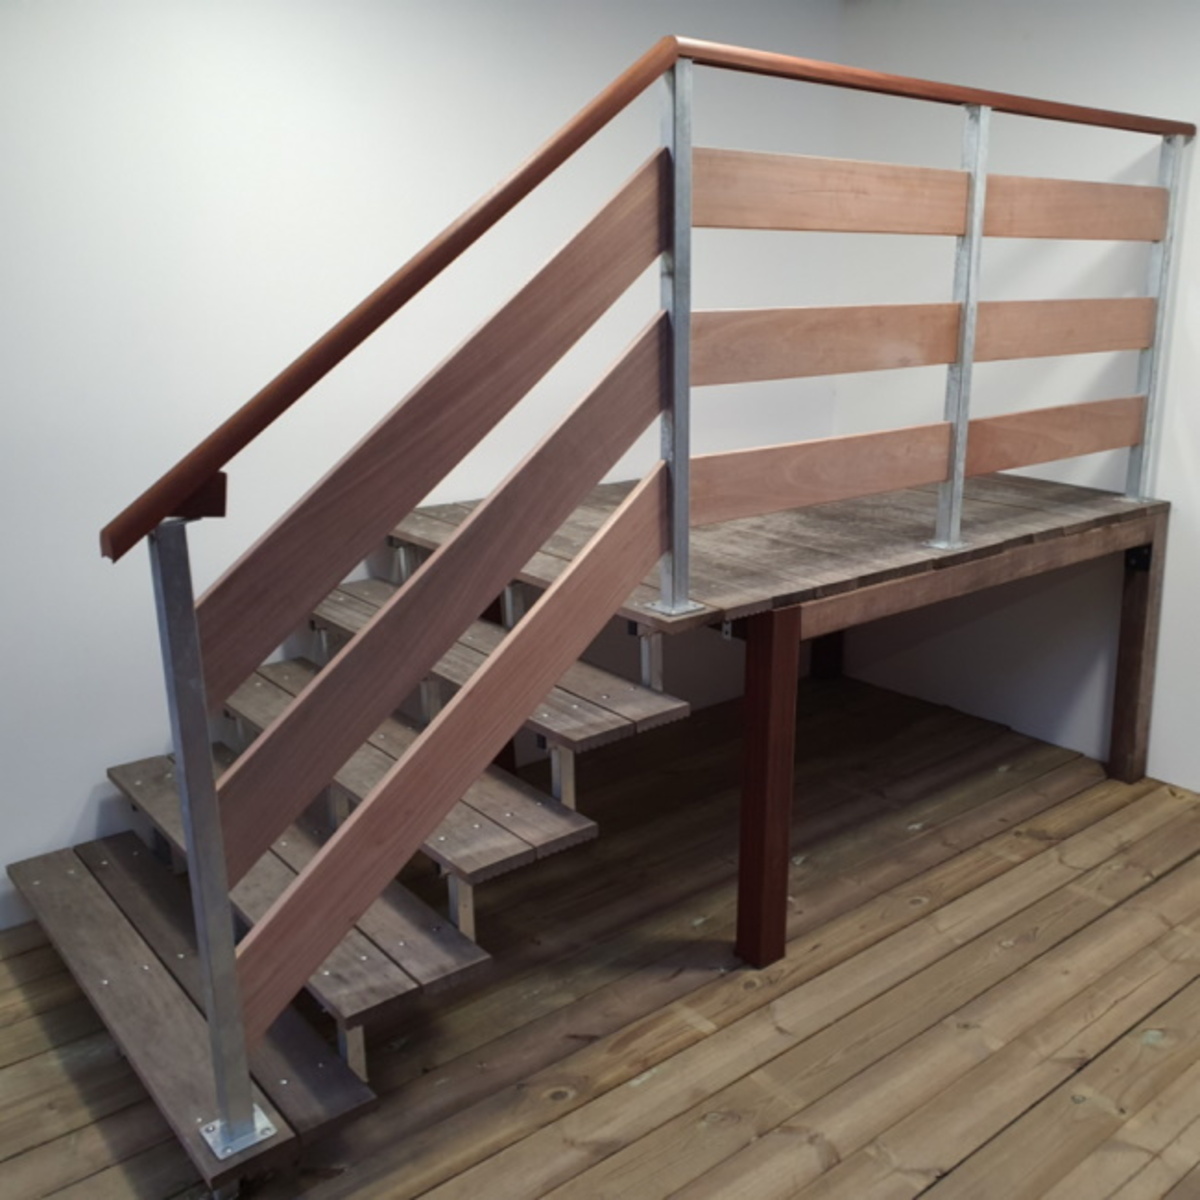 Plateforme bois autoclave ou exotique pour escalier extérieur